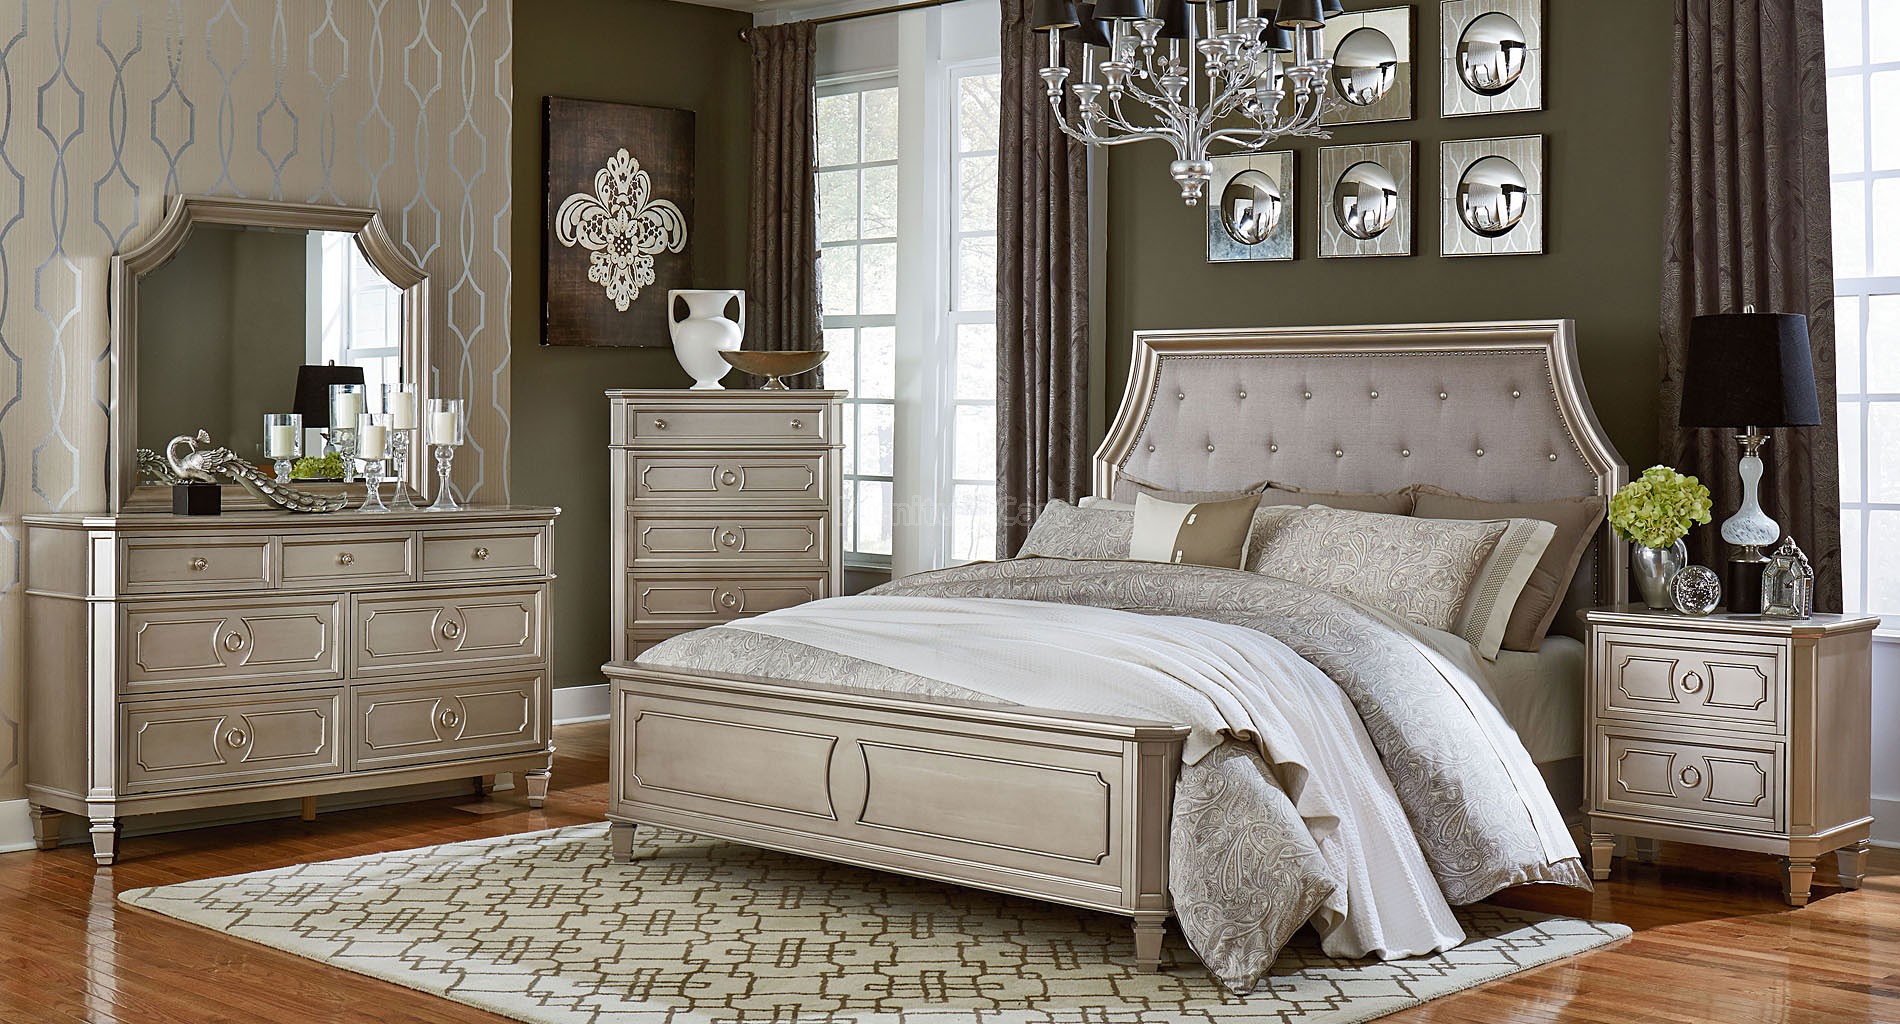 repaint bedroom furniture silver or nickel